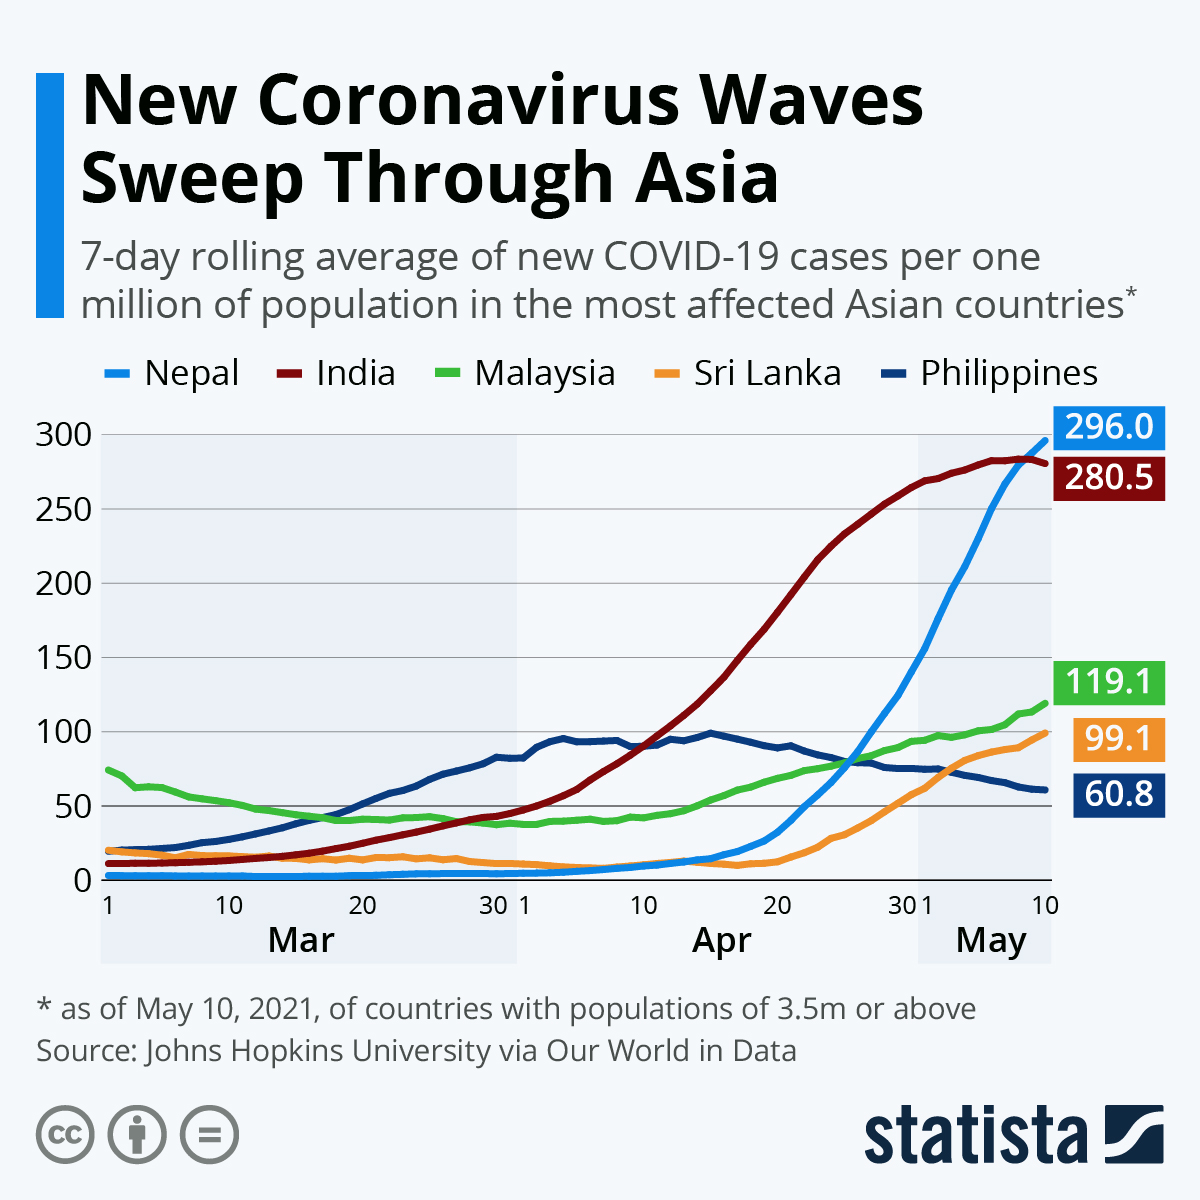 New Coronavirus Waves Sweep Through Asia